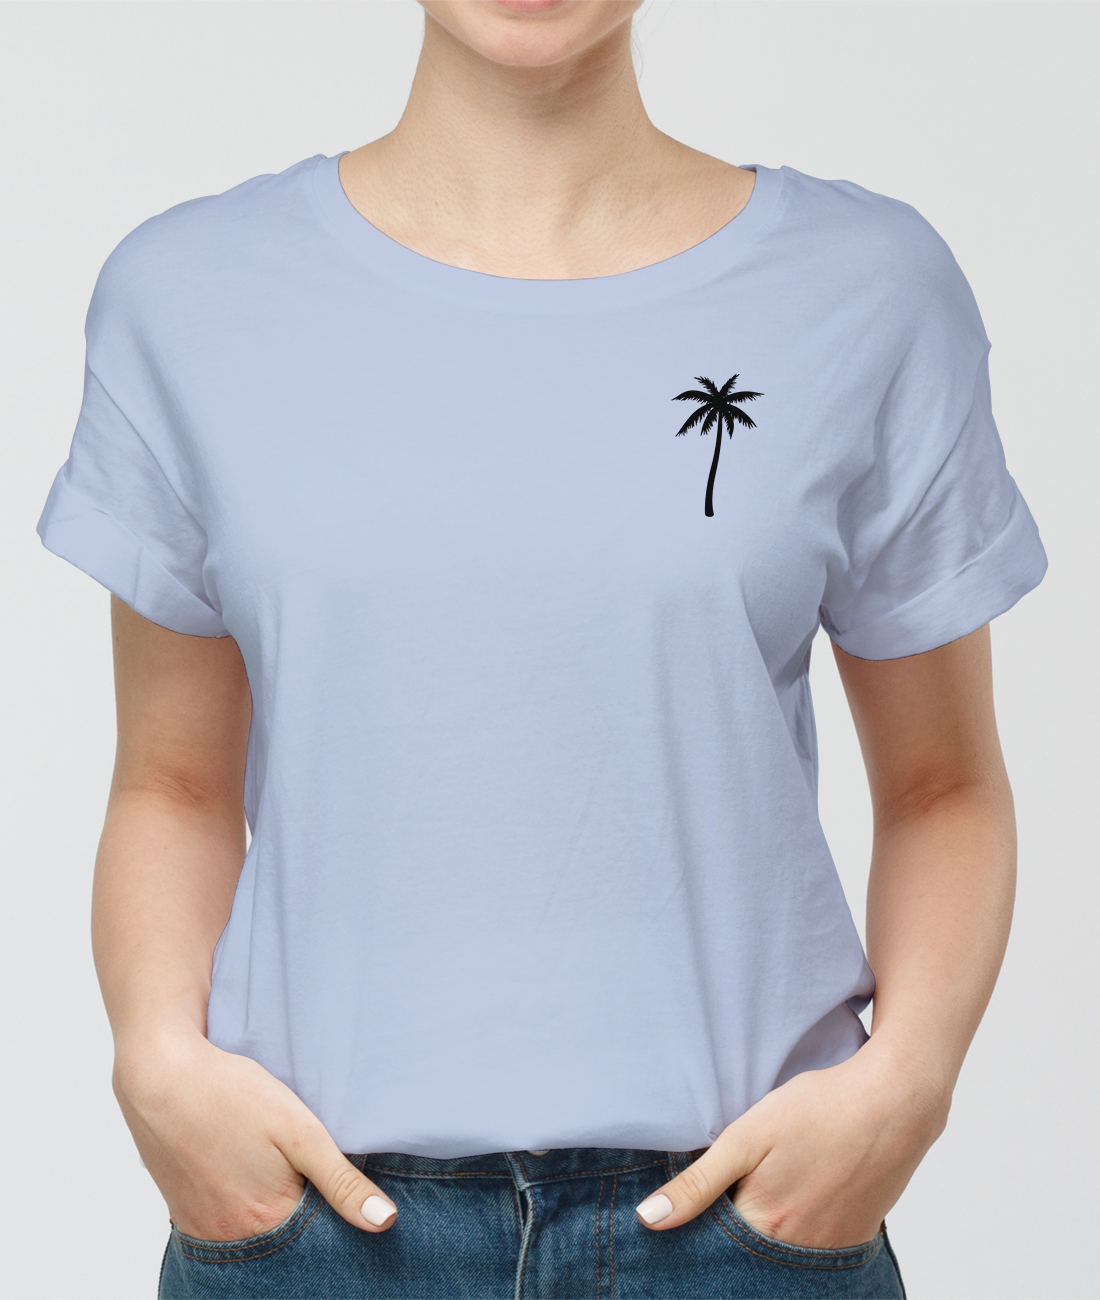 Tričko s potlačou Tričko s palmami